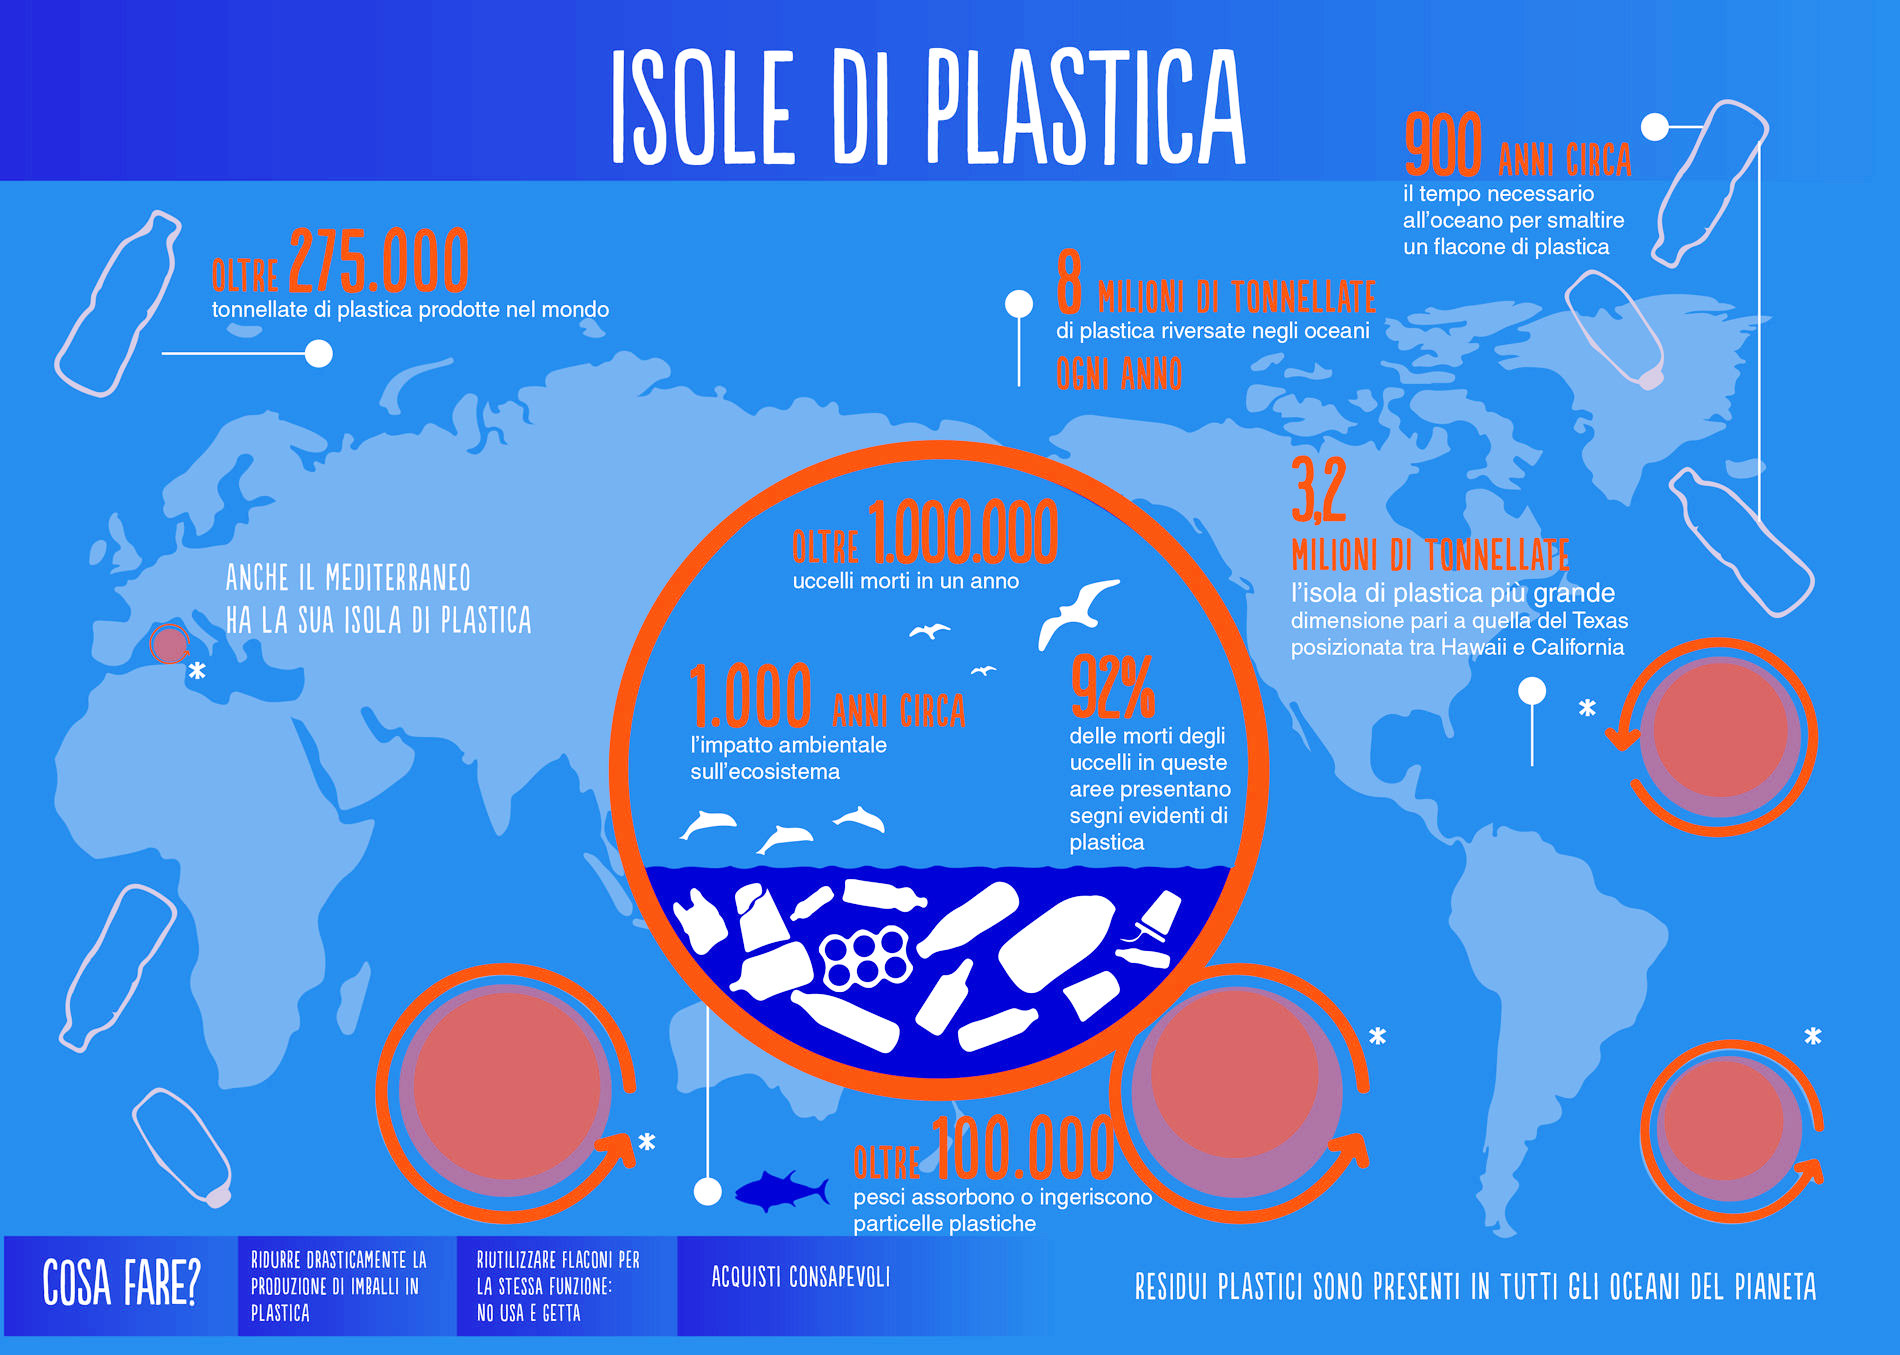 L'Inghilterra vara Leggi contro l'inquinamento di plastica negli Oceani